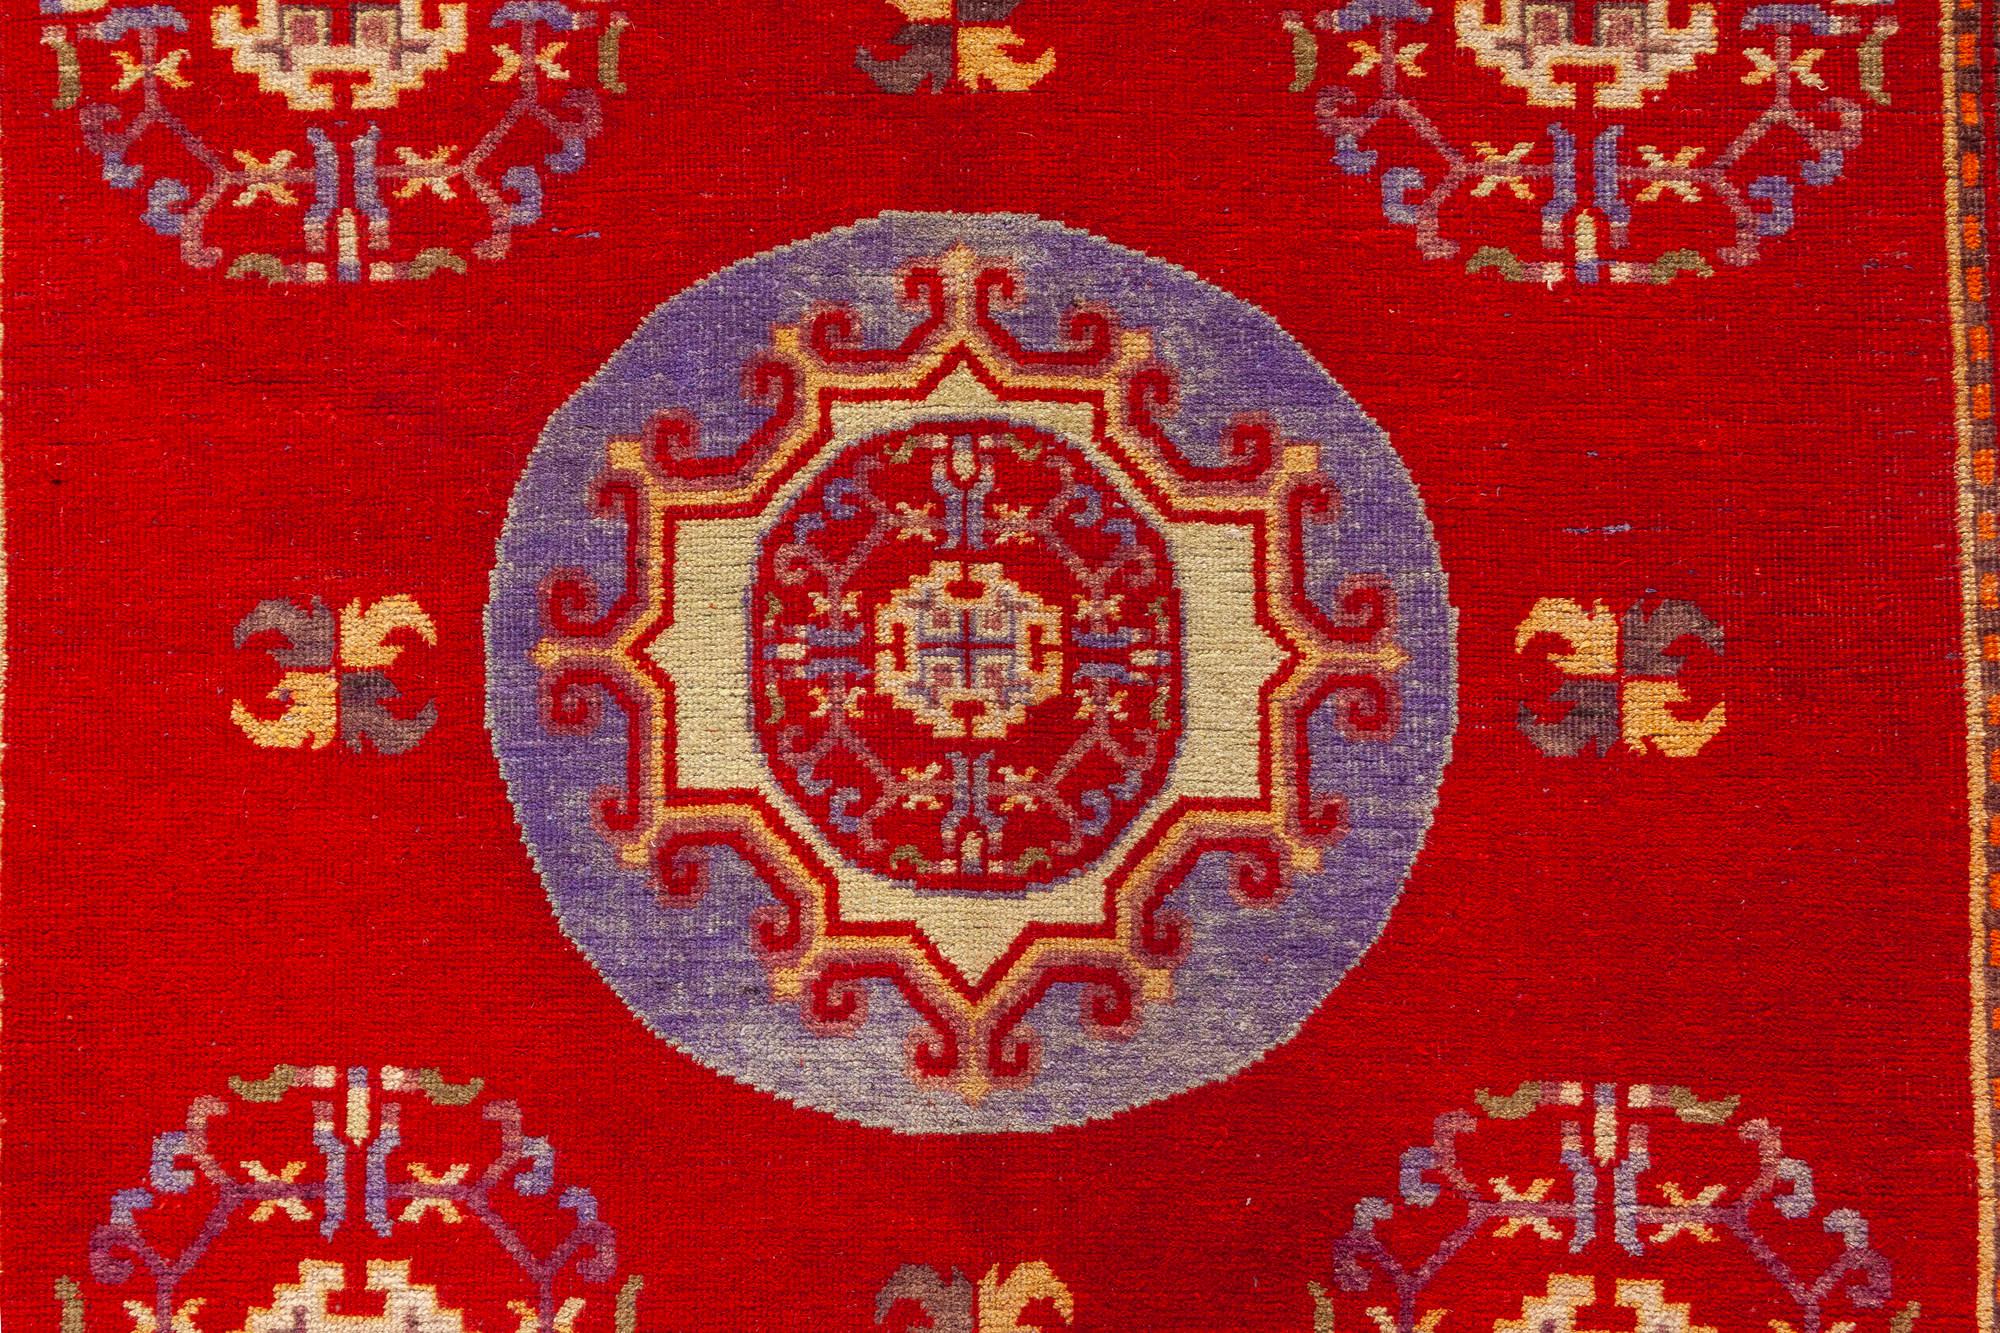 Samarkand-Teppich aus der Mitte des 20. Jahrhunderts, rot, blau, handgefertigt aus Wolle.
Größe: 4'6